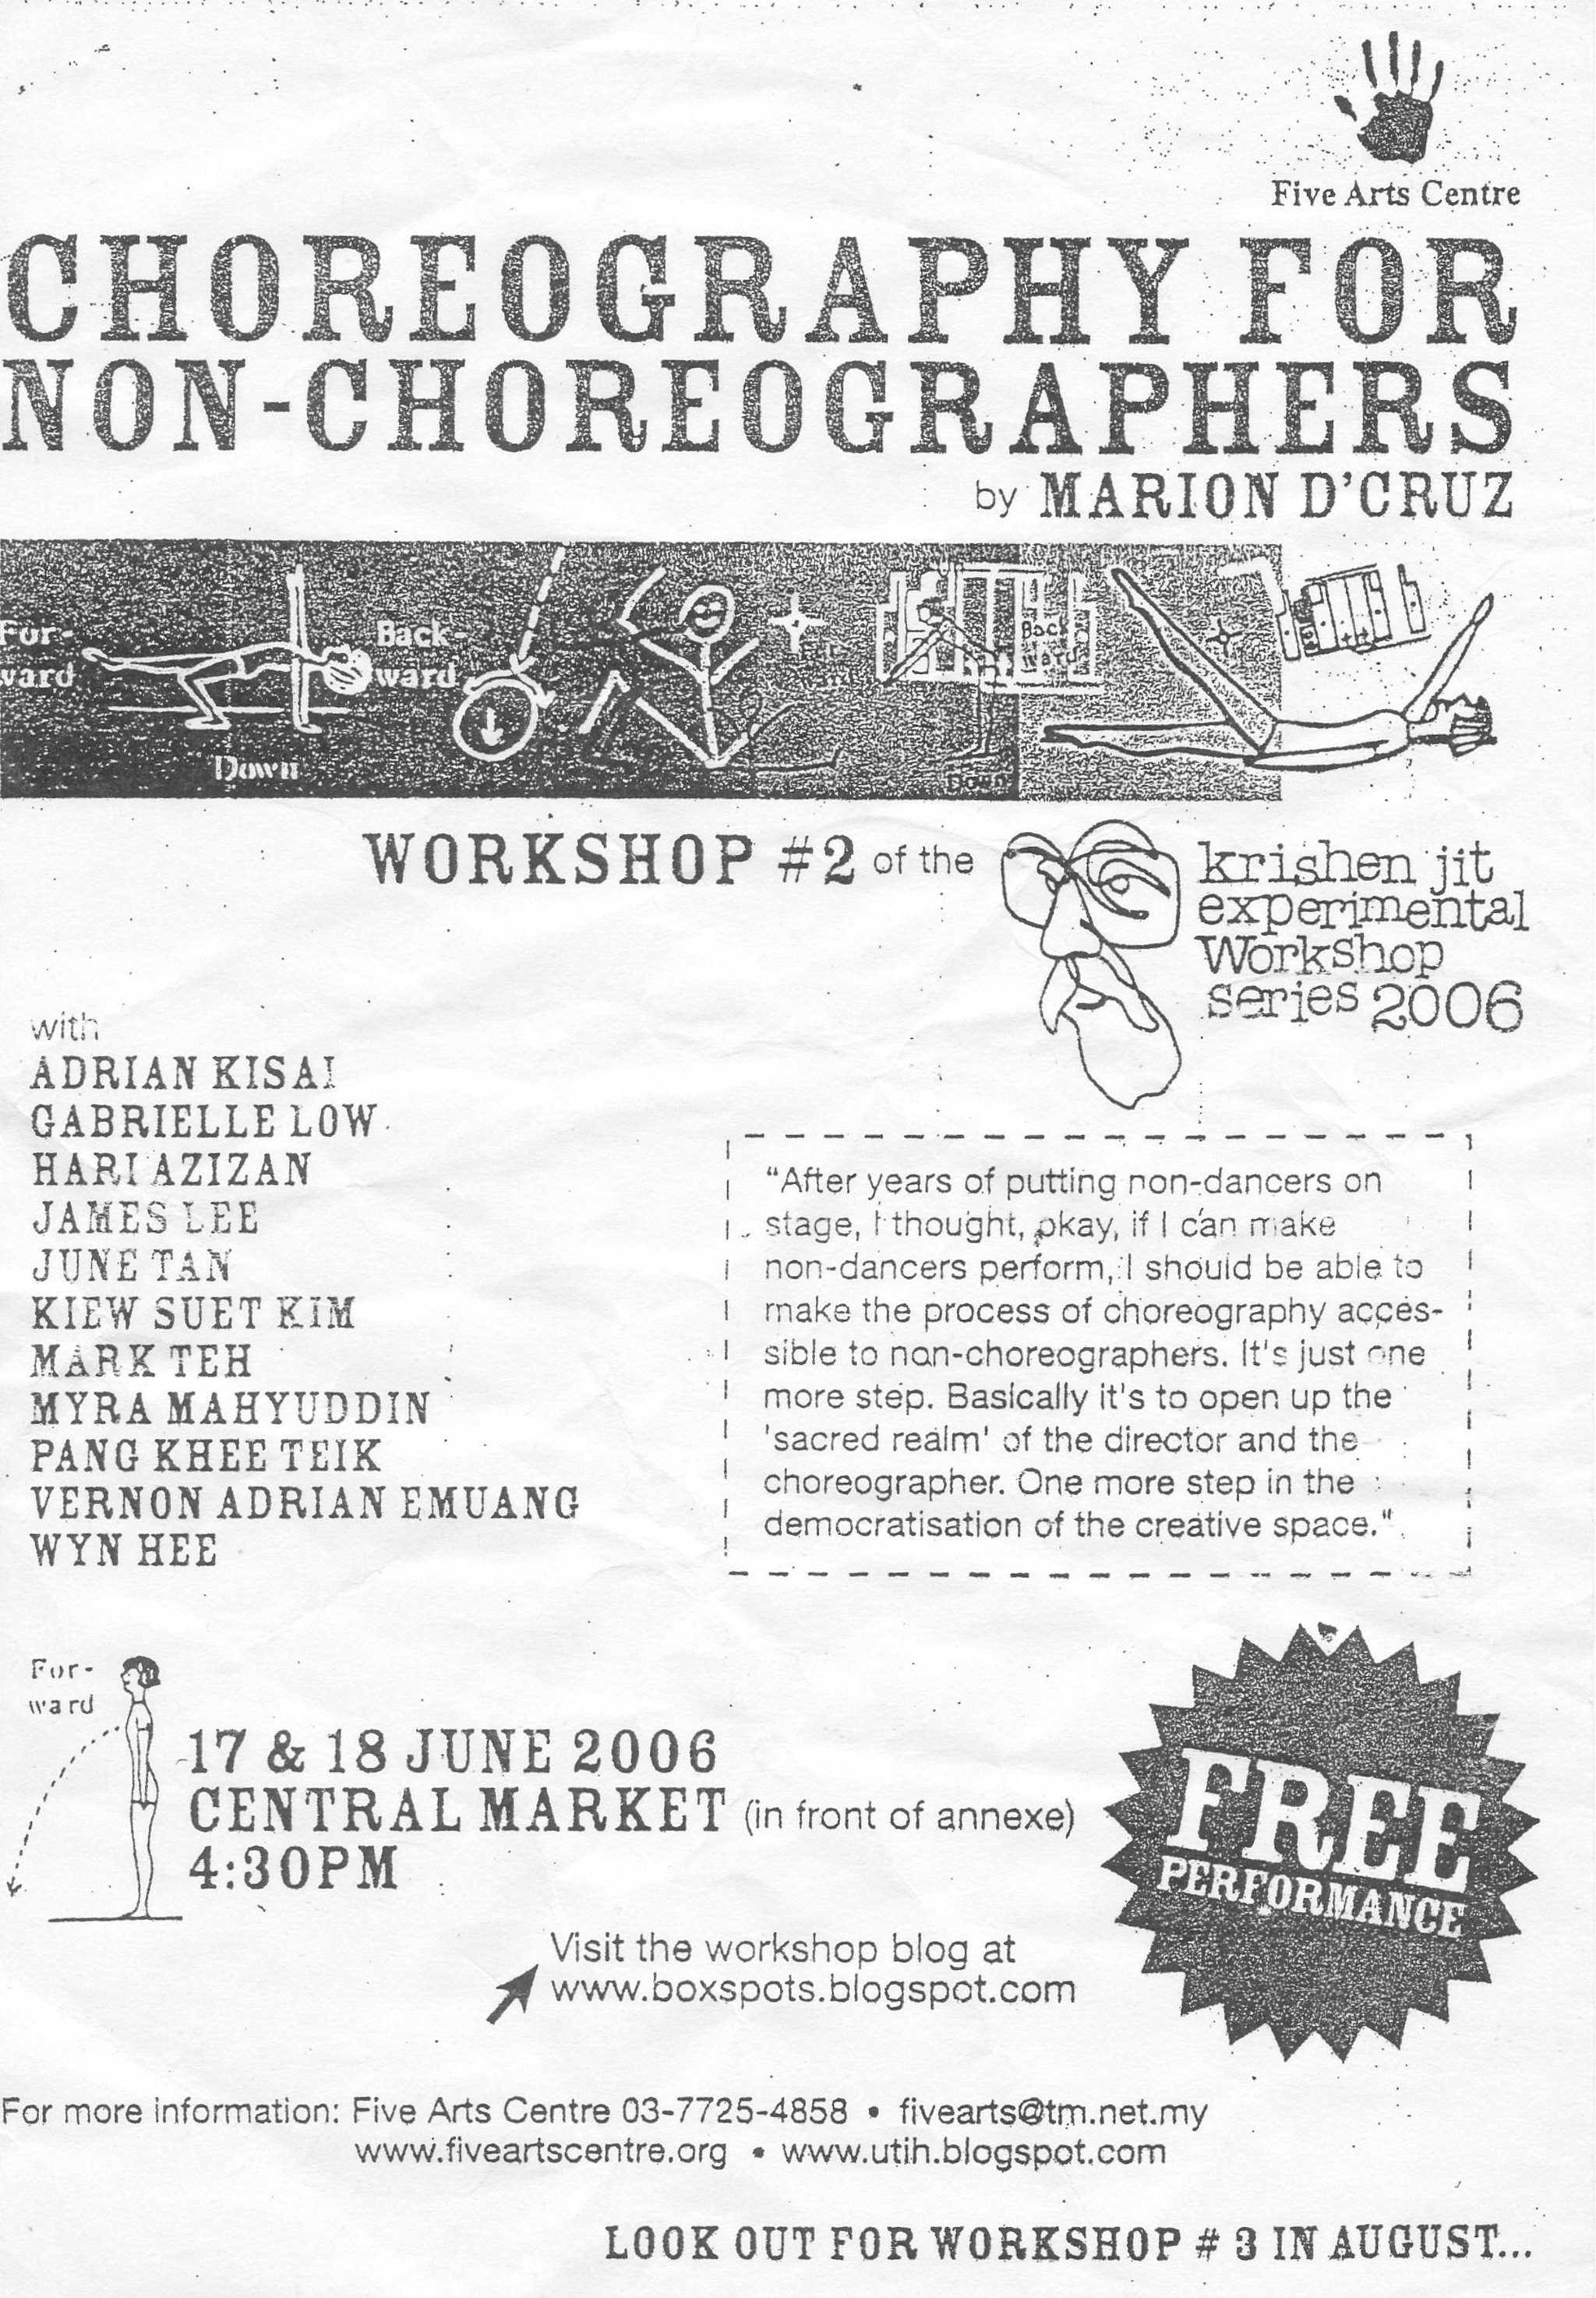 2006 Choreography For Non-Choreographers